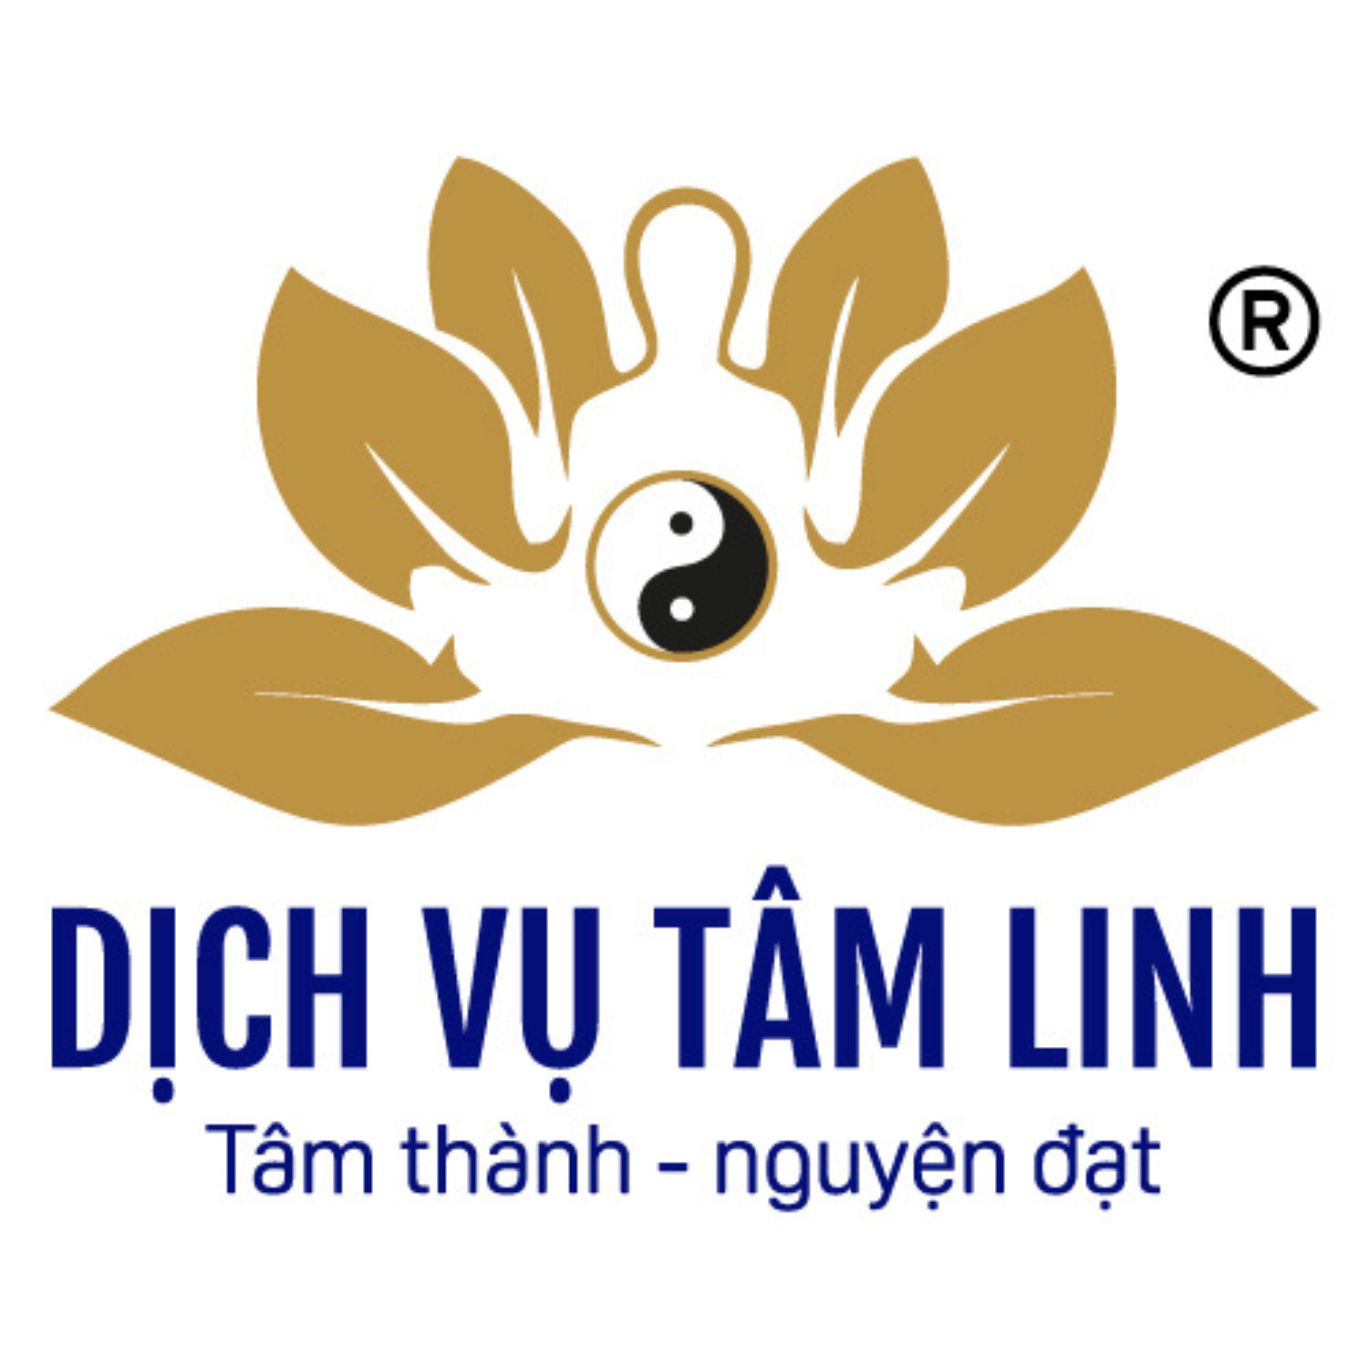 Logo Dịch Vụ Tâm Linh